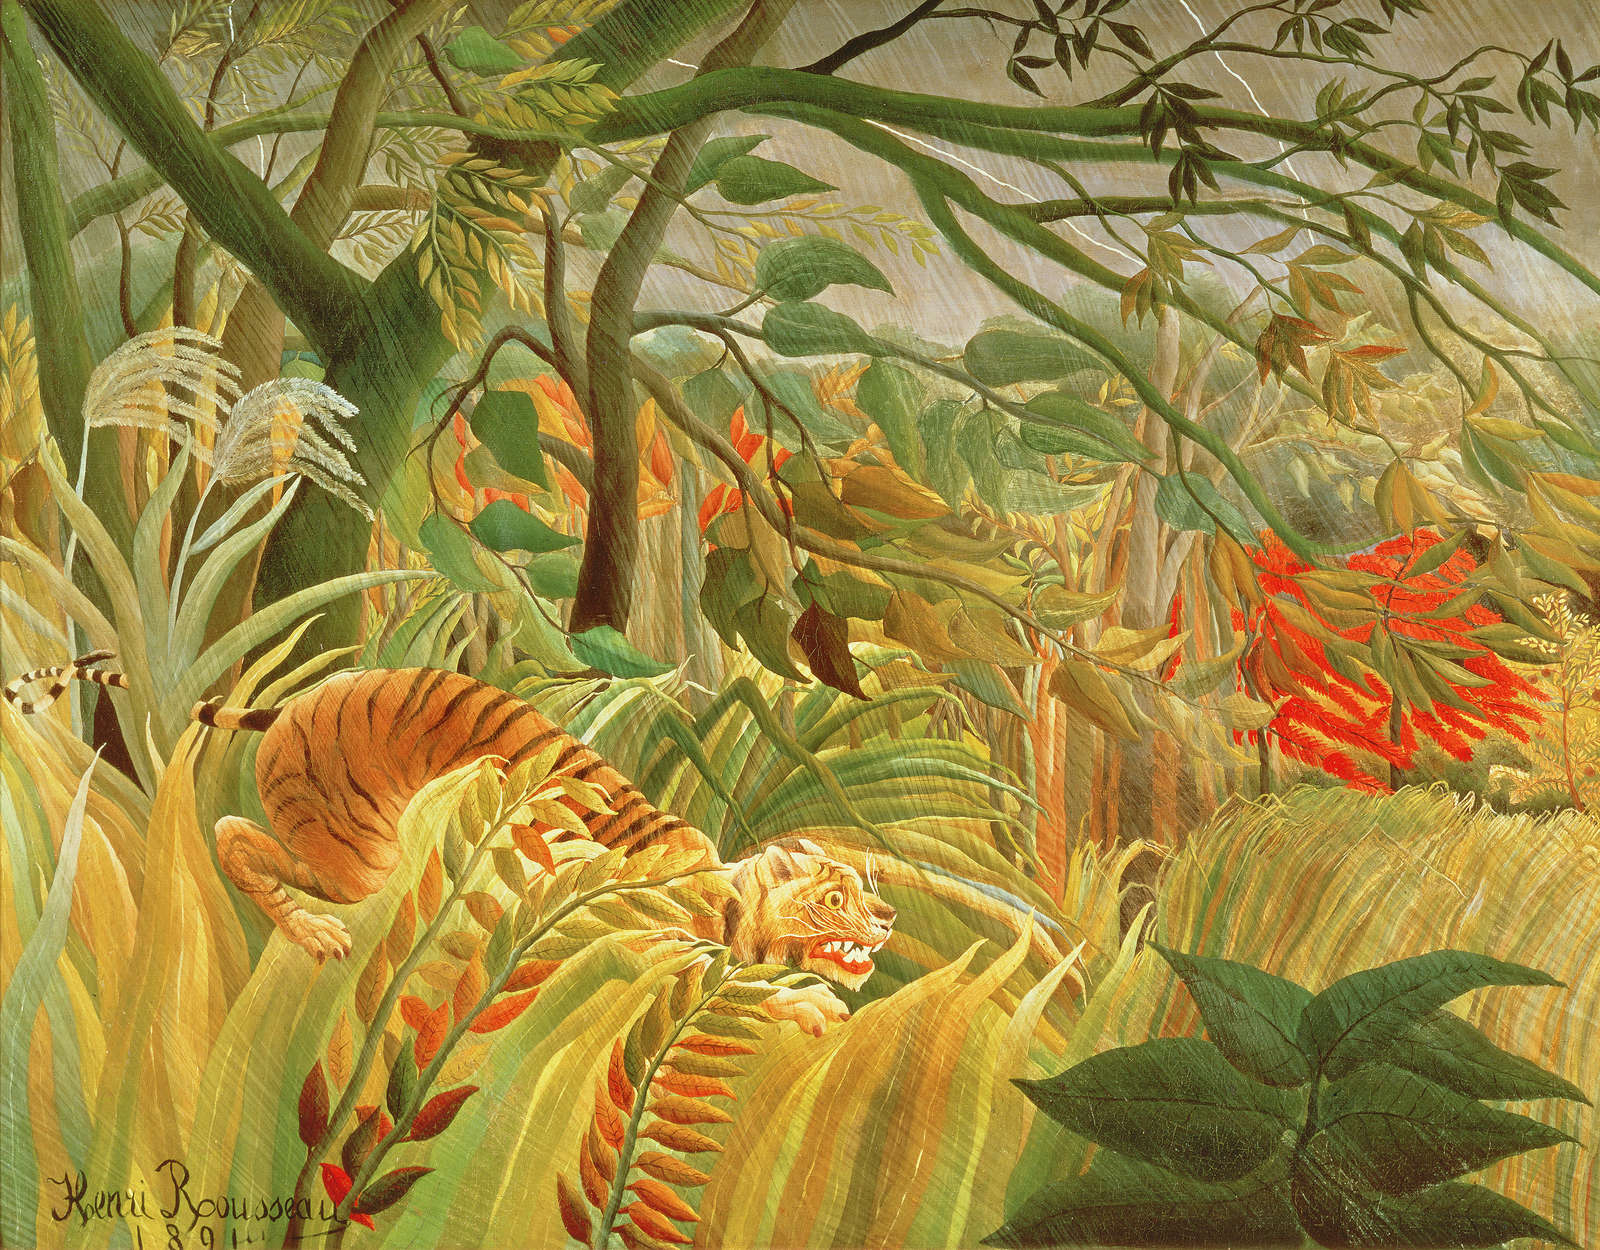             Fototapete "Tiger in einem tropischen Sturm" von Henri Rousseau
        